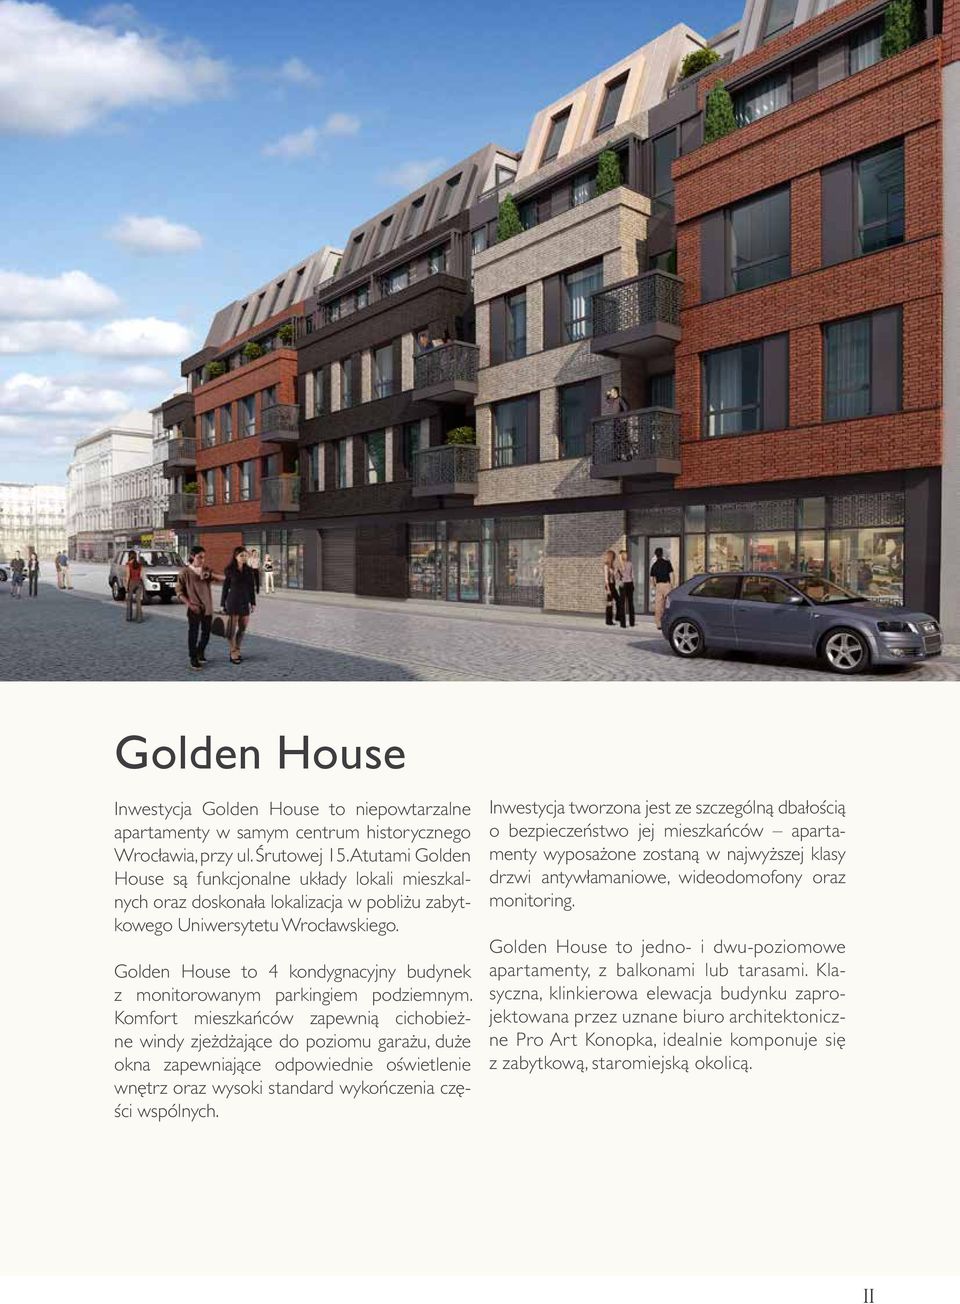 Golden House to 4 kondygnacyjny budynek z monitorowanym parkingiem podziemnym.